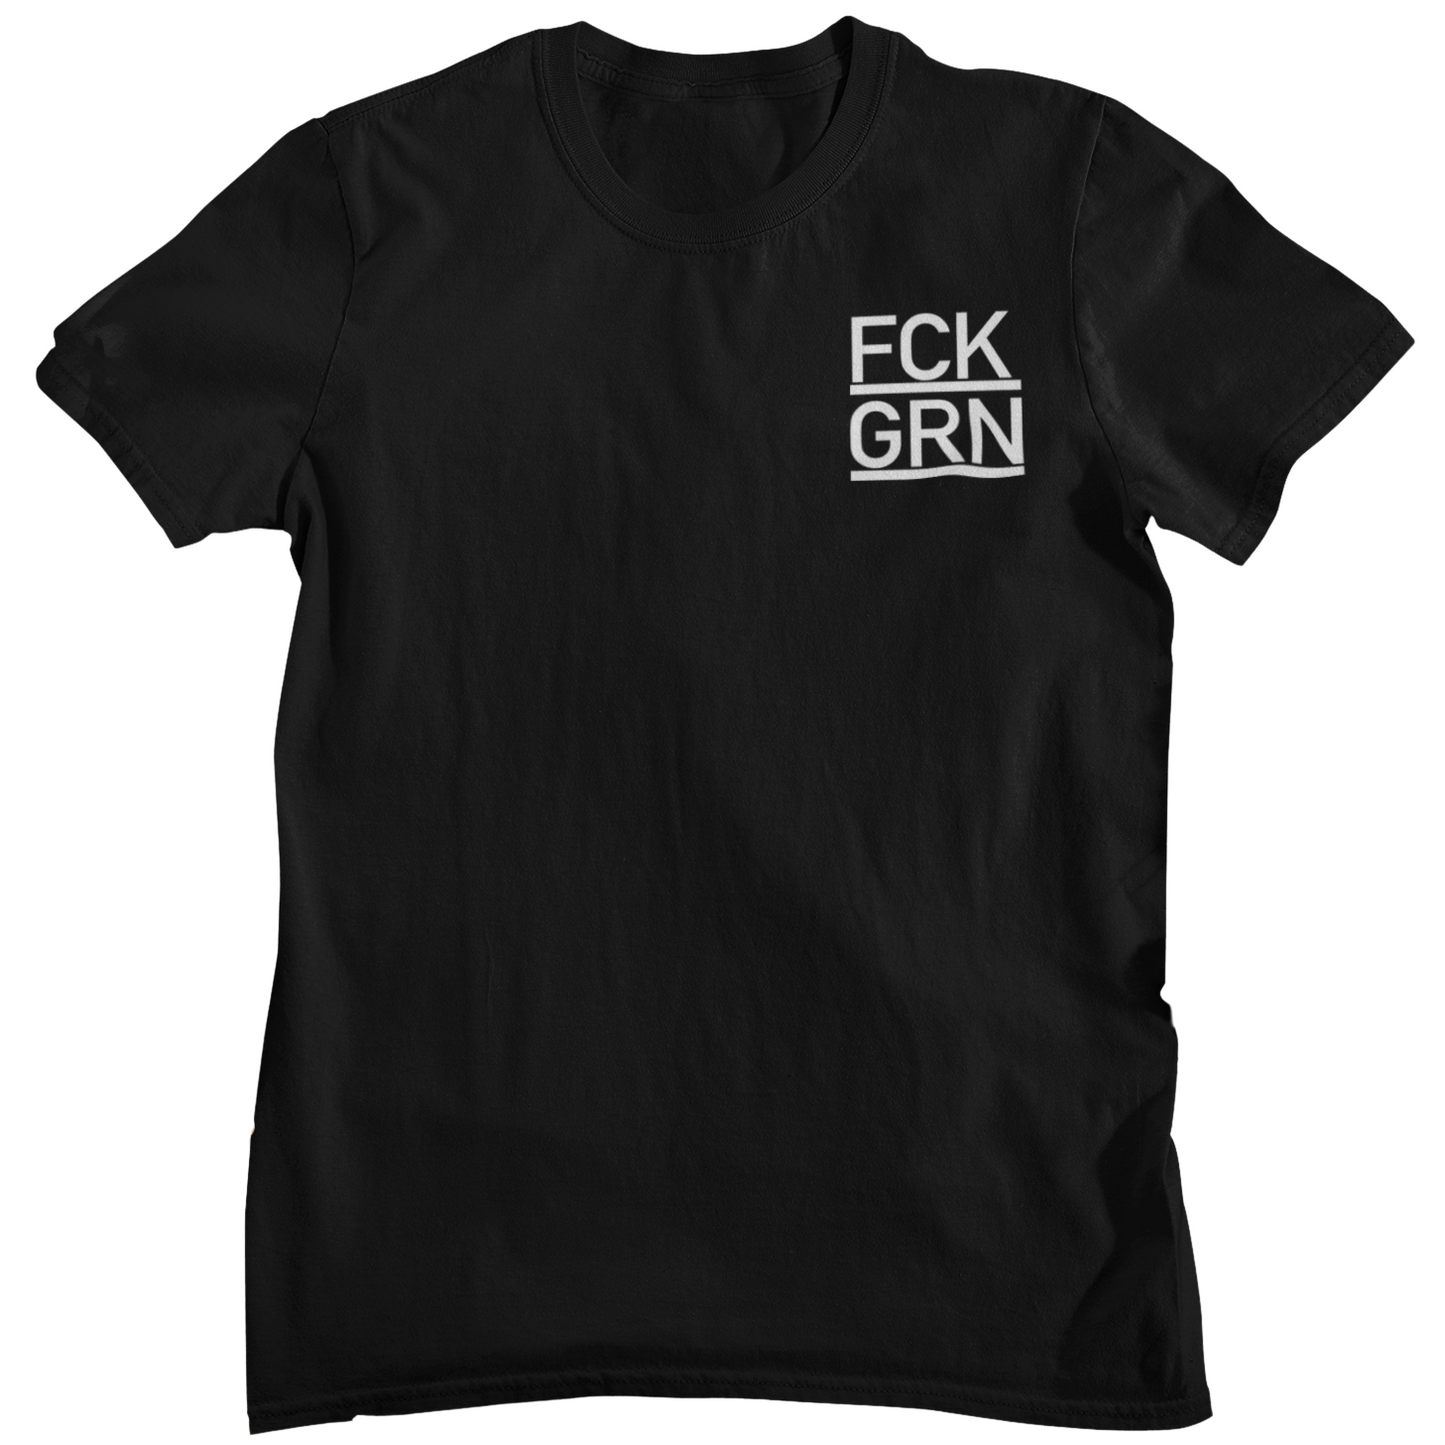 FCK GRN - Unisex Shirt